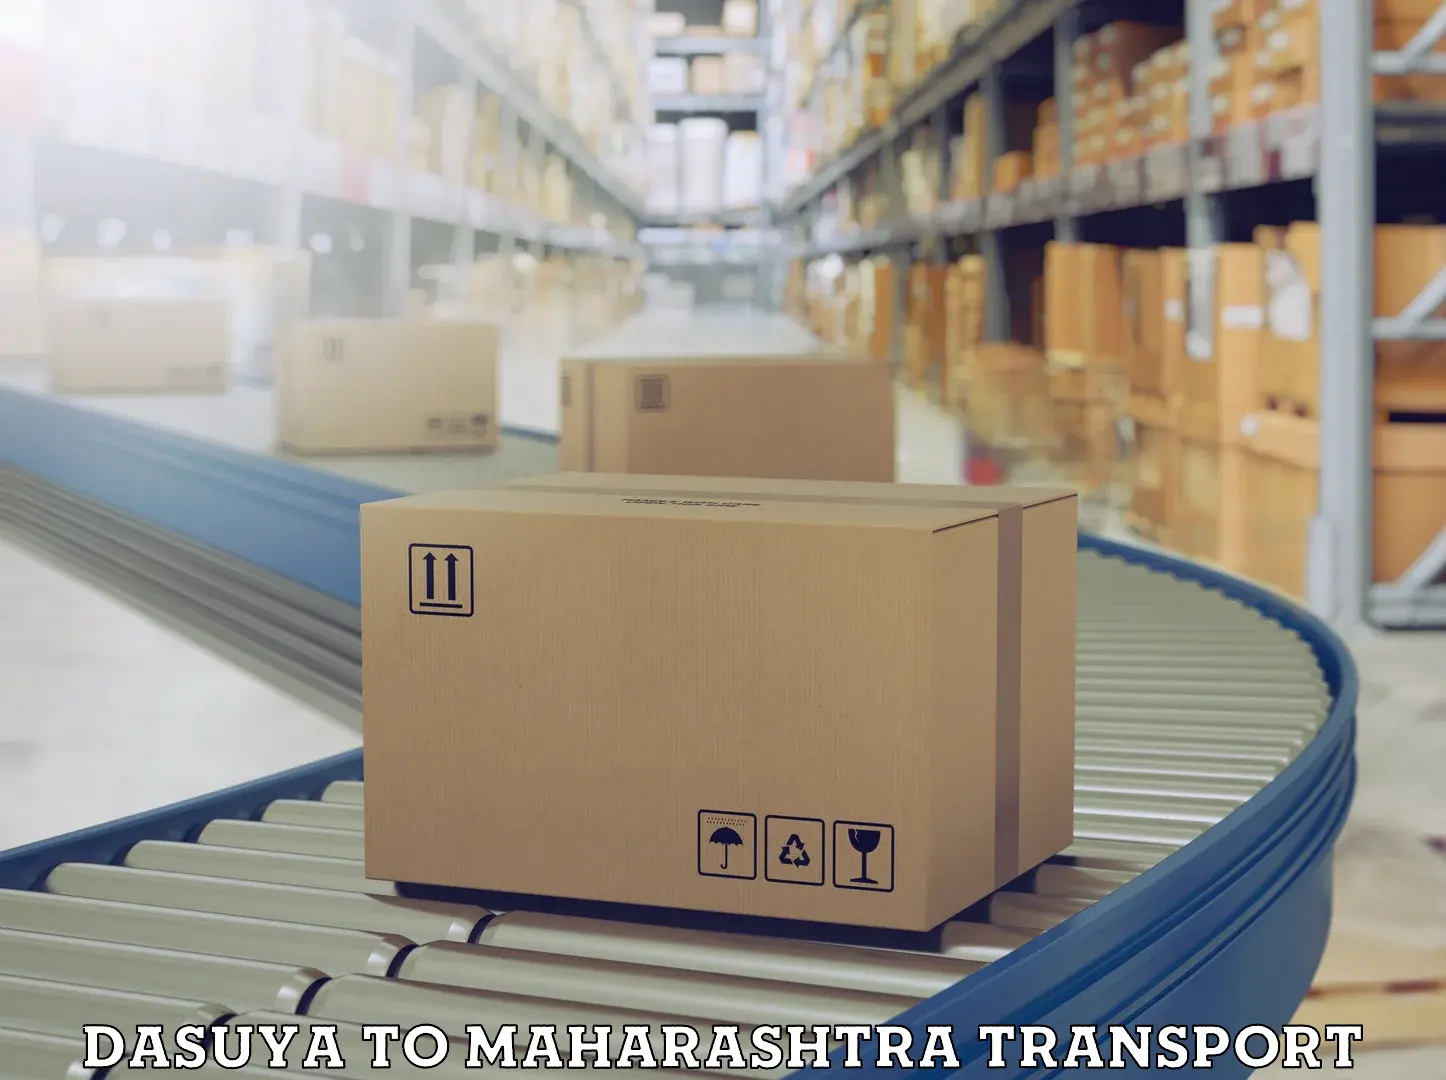 Luggage transport services Dasuya to Maharashtra